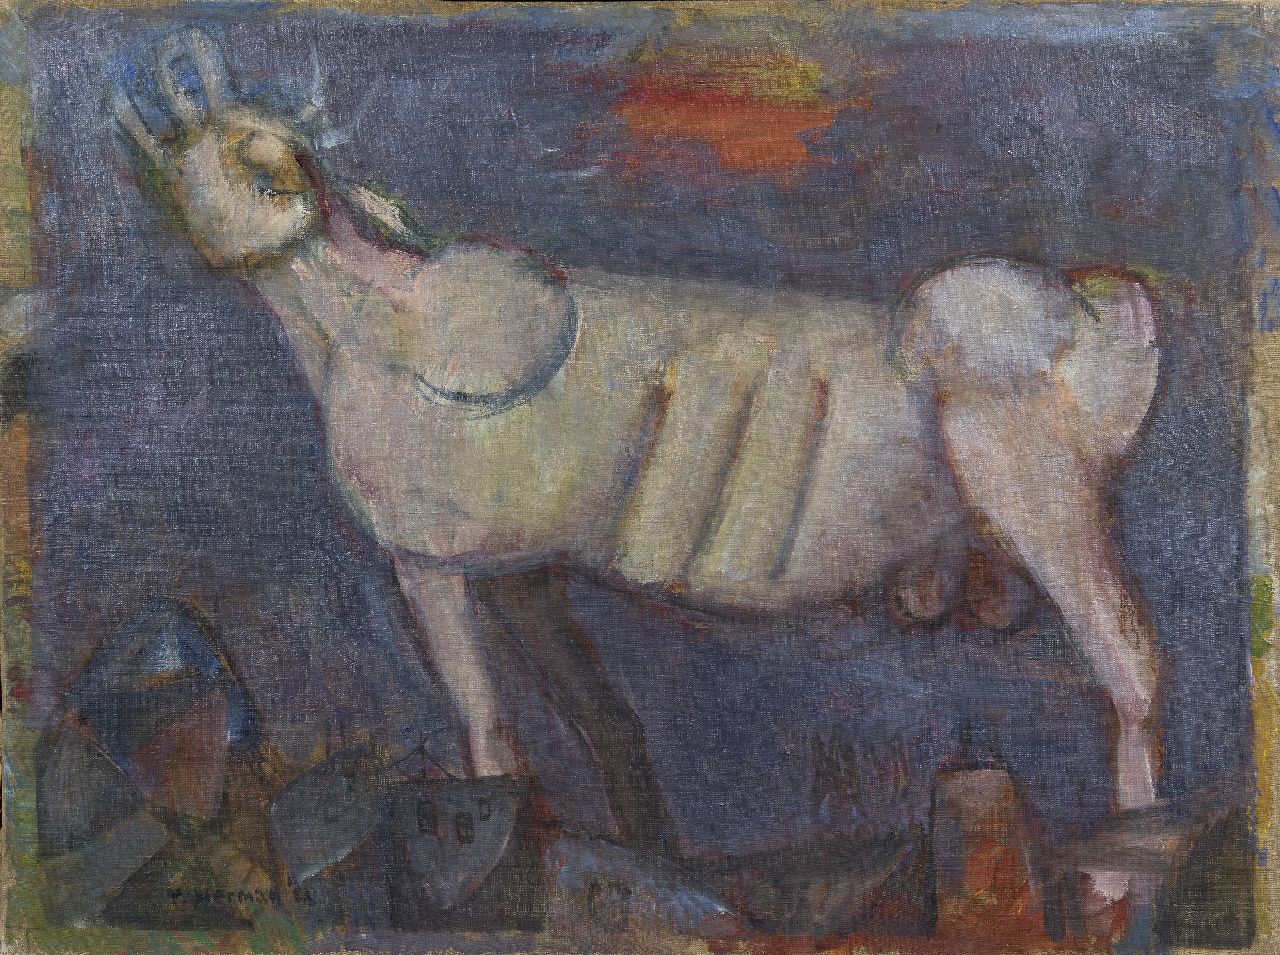 Rudi Bierman | Brullende stier, olieverf op doek, 60,5 x 80,5 cm, gesigneerd l.o. + verso en gedateerd '52, zonder lijst